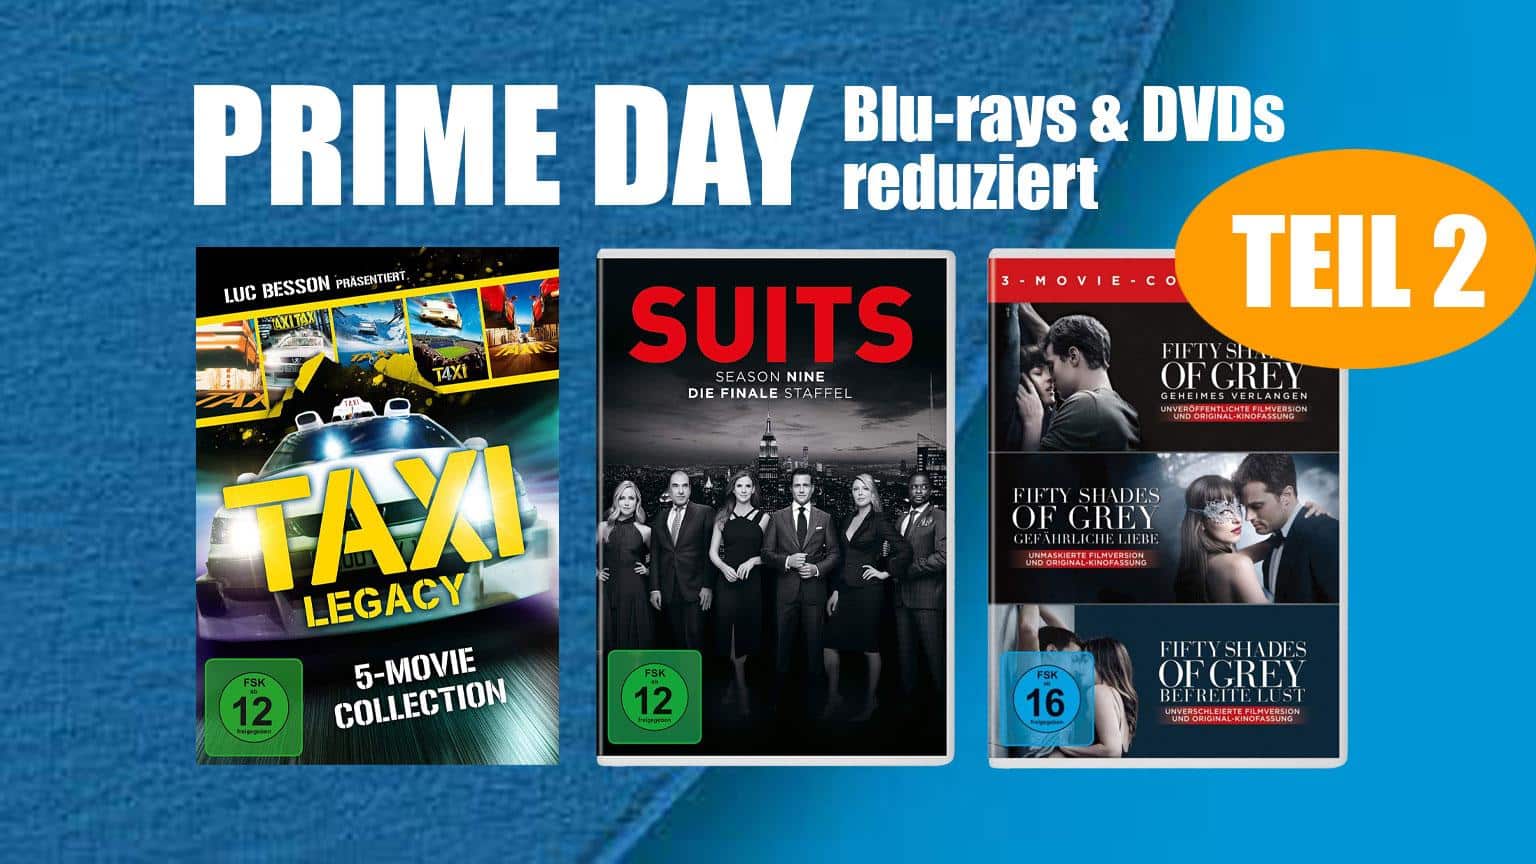 Prime Day 2020 Blu-ray & DVD reduziert Deal Amazon.de sparen kaufen shop Artikelbild Teil 2